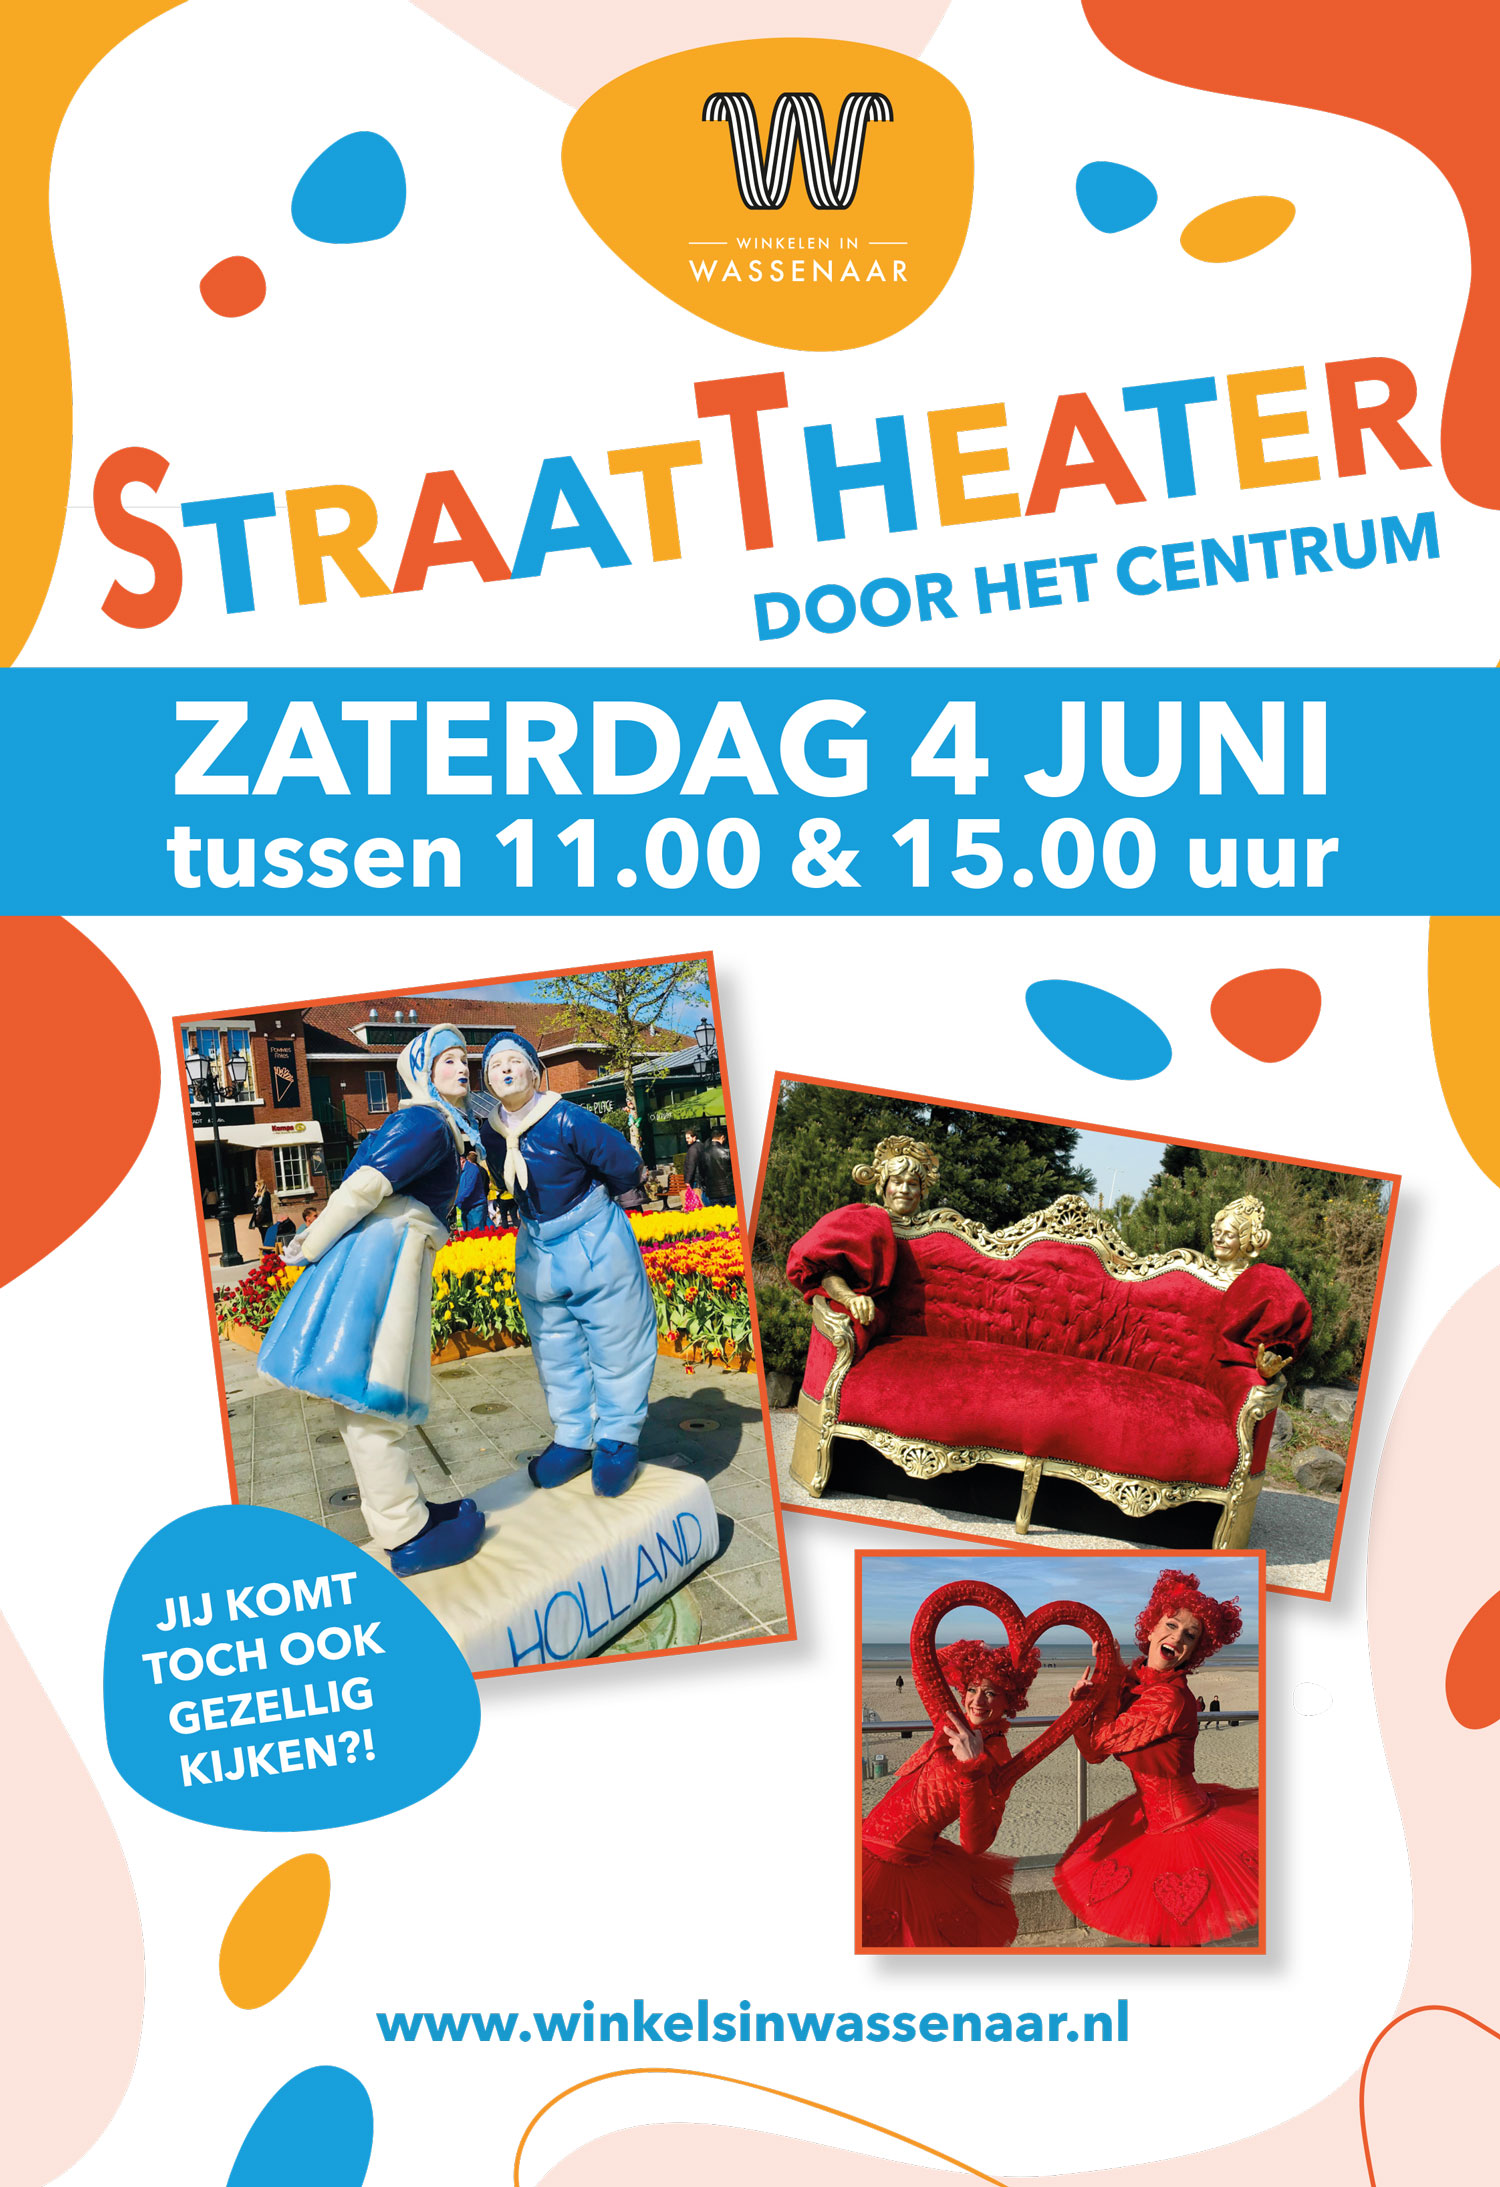 4 juni Straattheater door het centrum